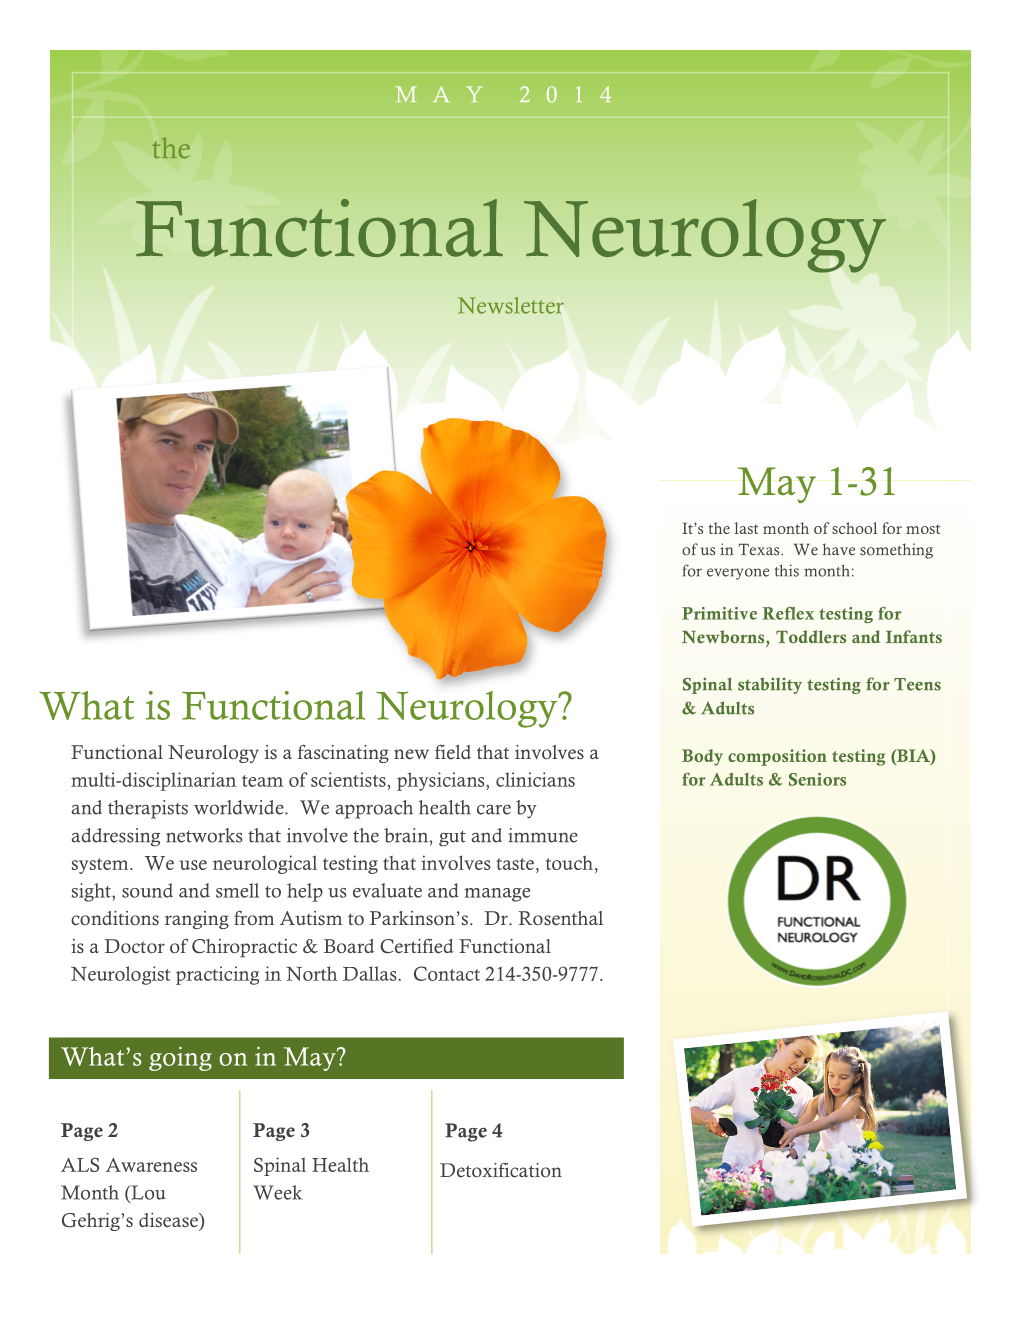 DR Functional Neurology